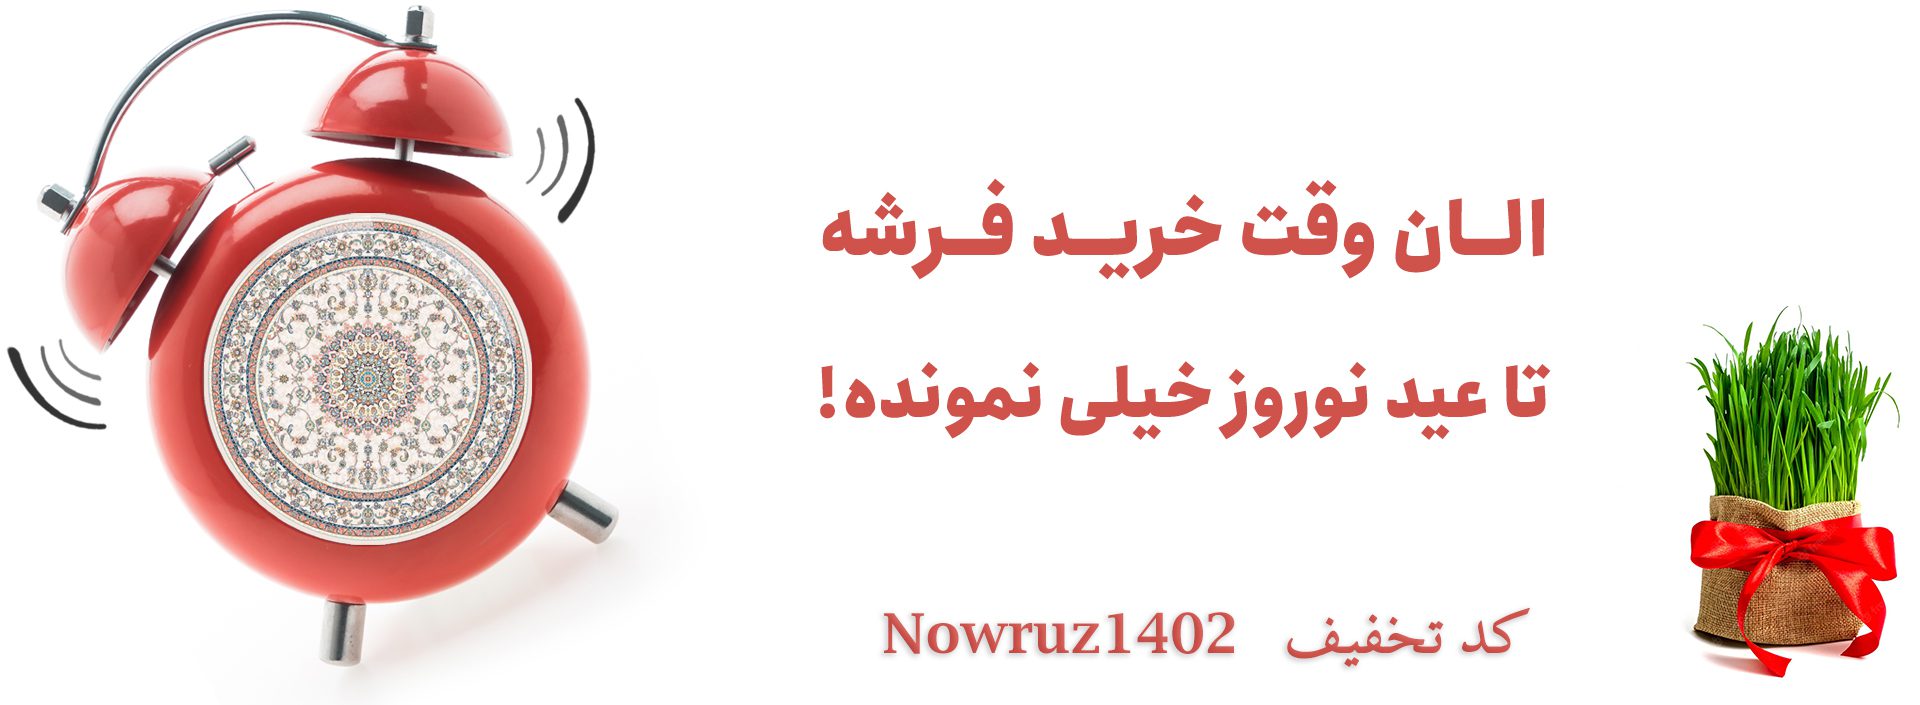 Nowruz-705-1920